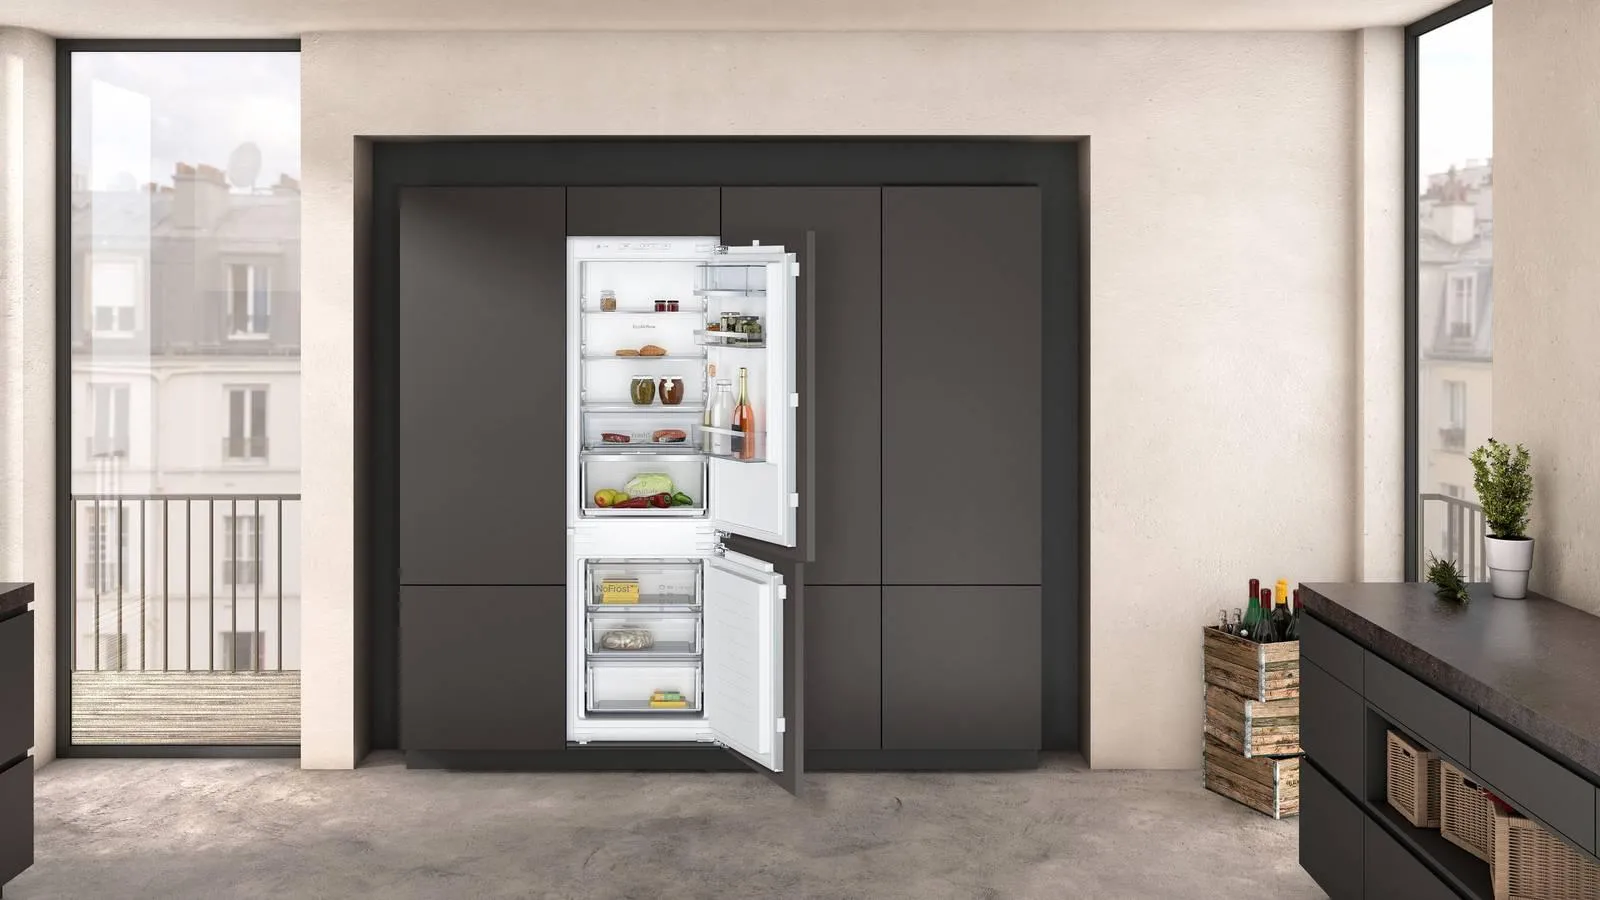 Scegliere il frigorifero, da incasso o freestanding - Cose di Casa